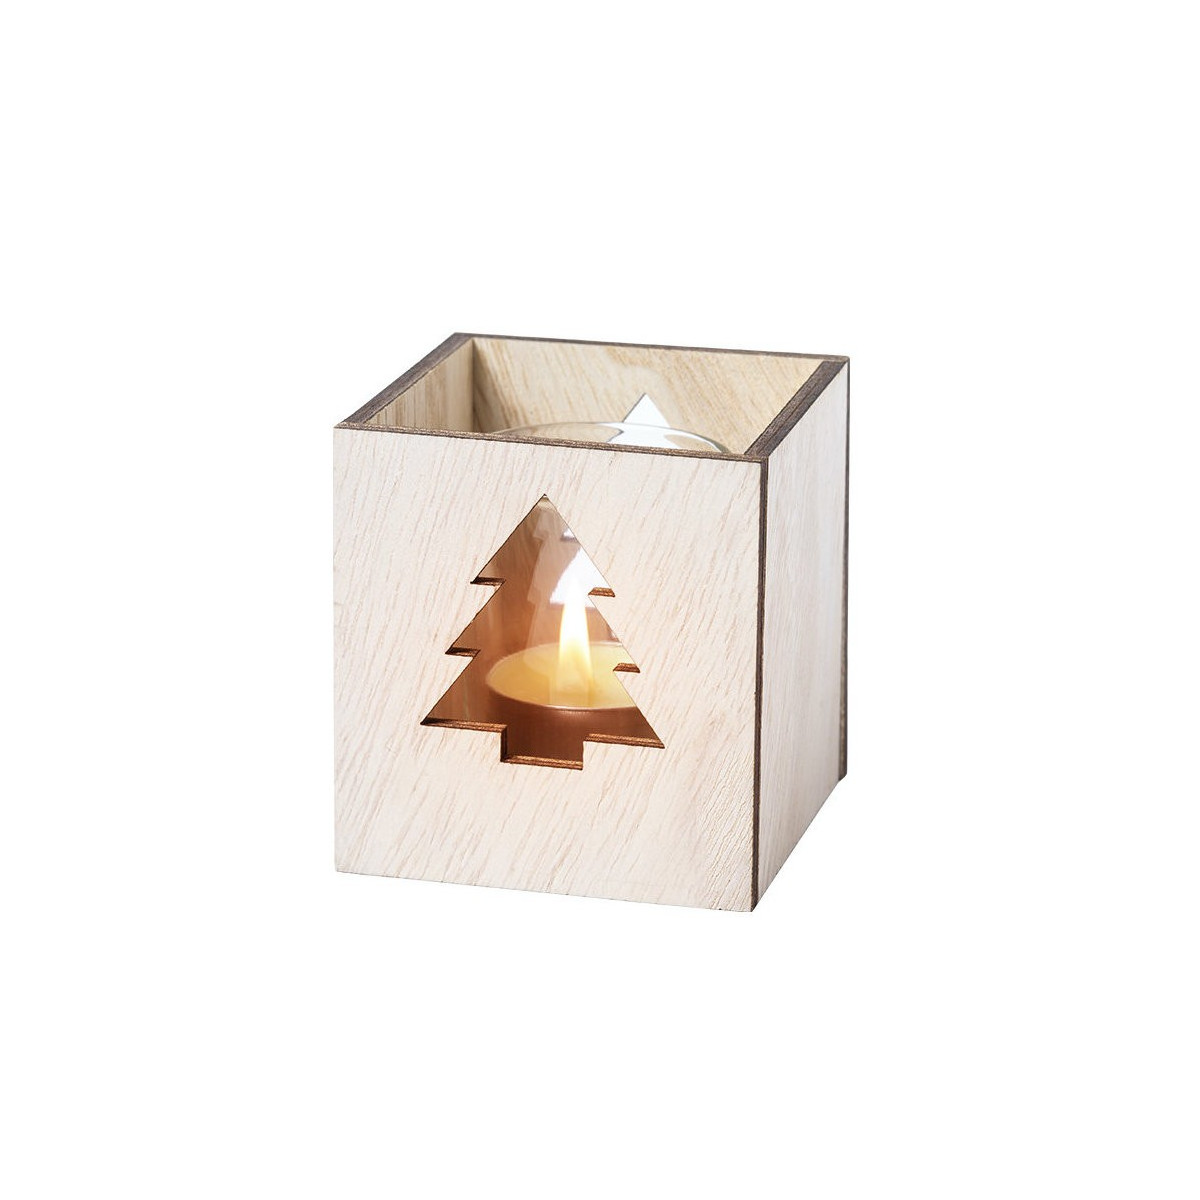 Vela aromática en vaso de vidrio presentada en caja de madera especial navidad